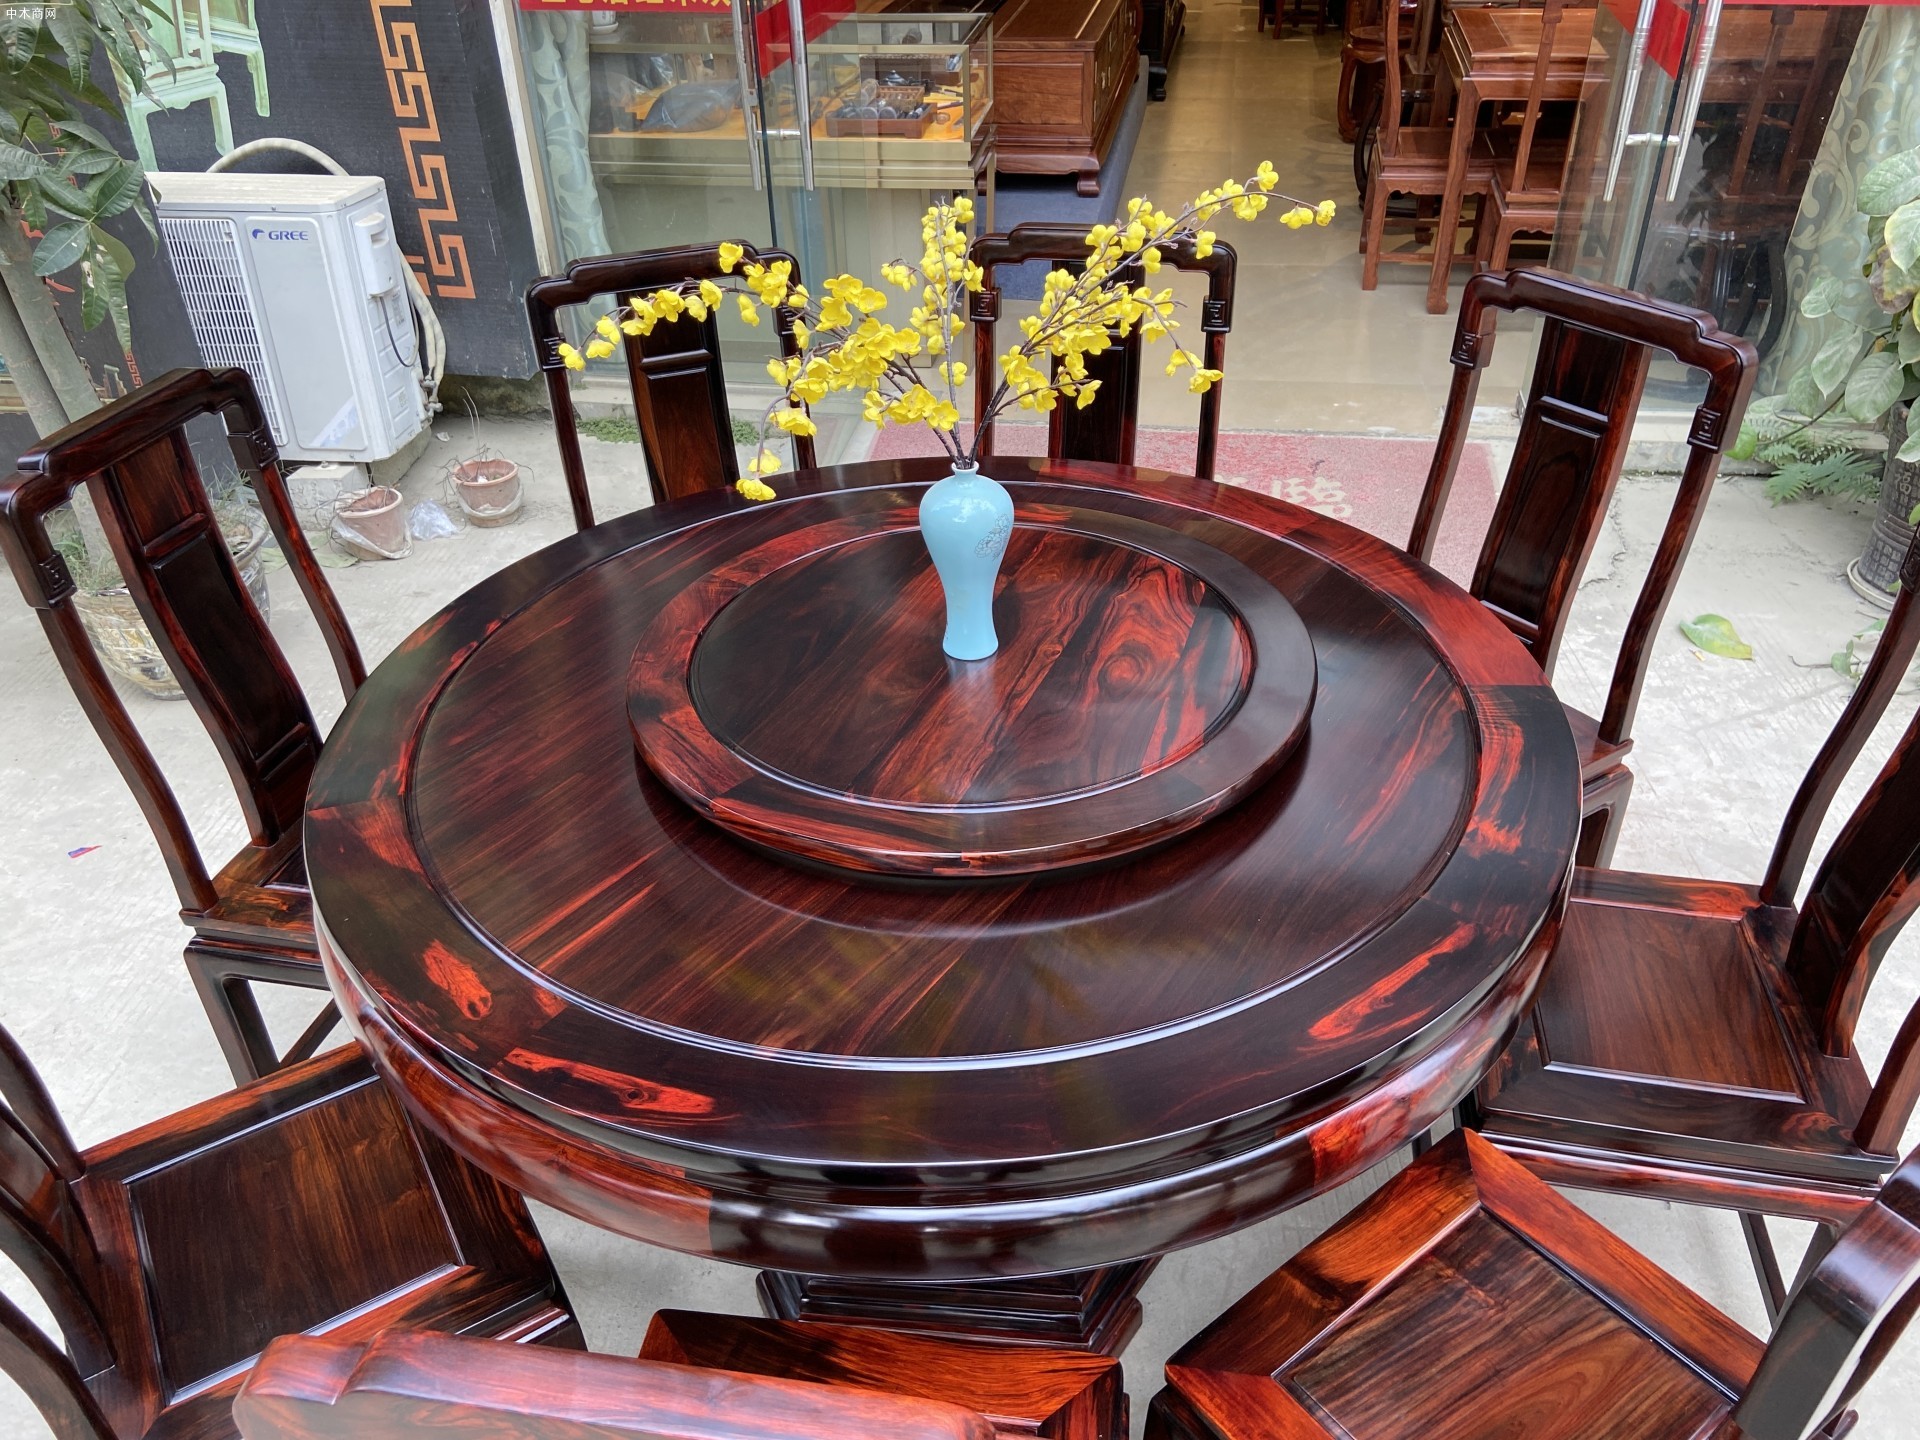 老挝大红酸枝国色天香圆桌寓意阖家团圆,让家更温馨